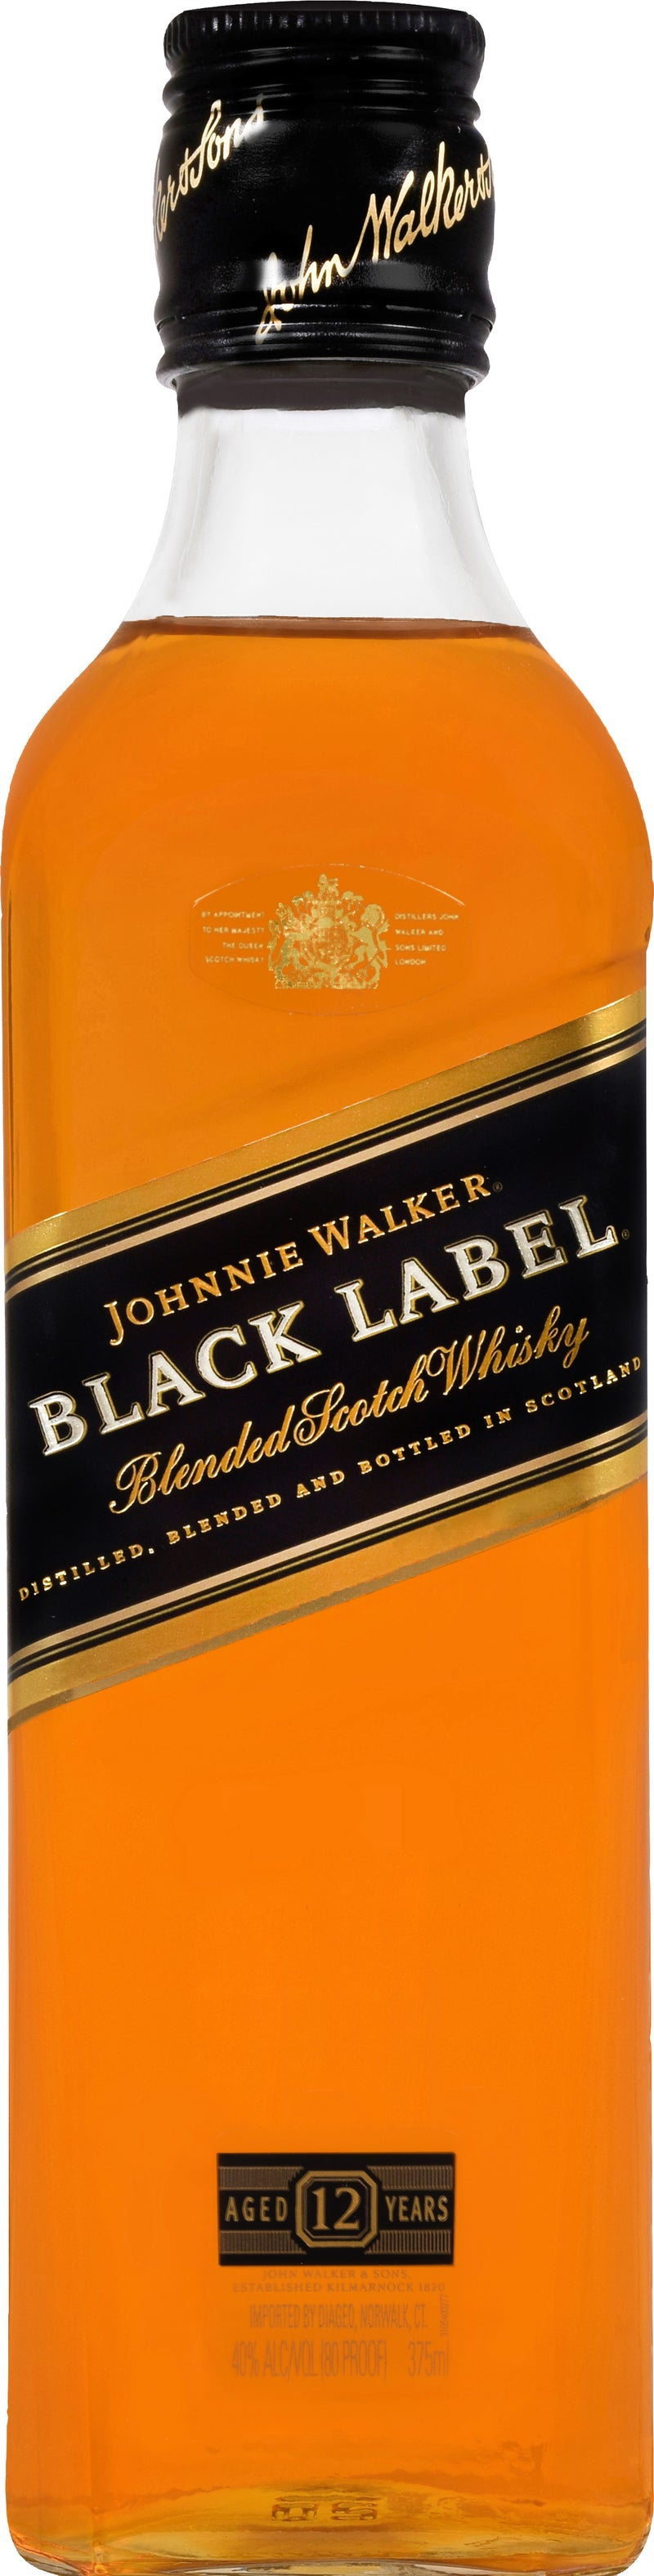 JOHNNIE WALKER BLACK LABEL 375ML